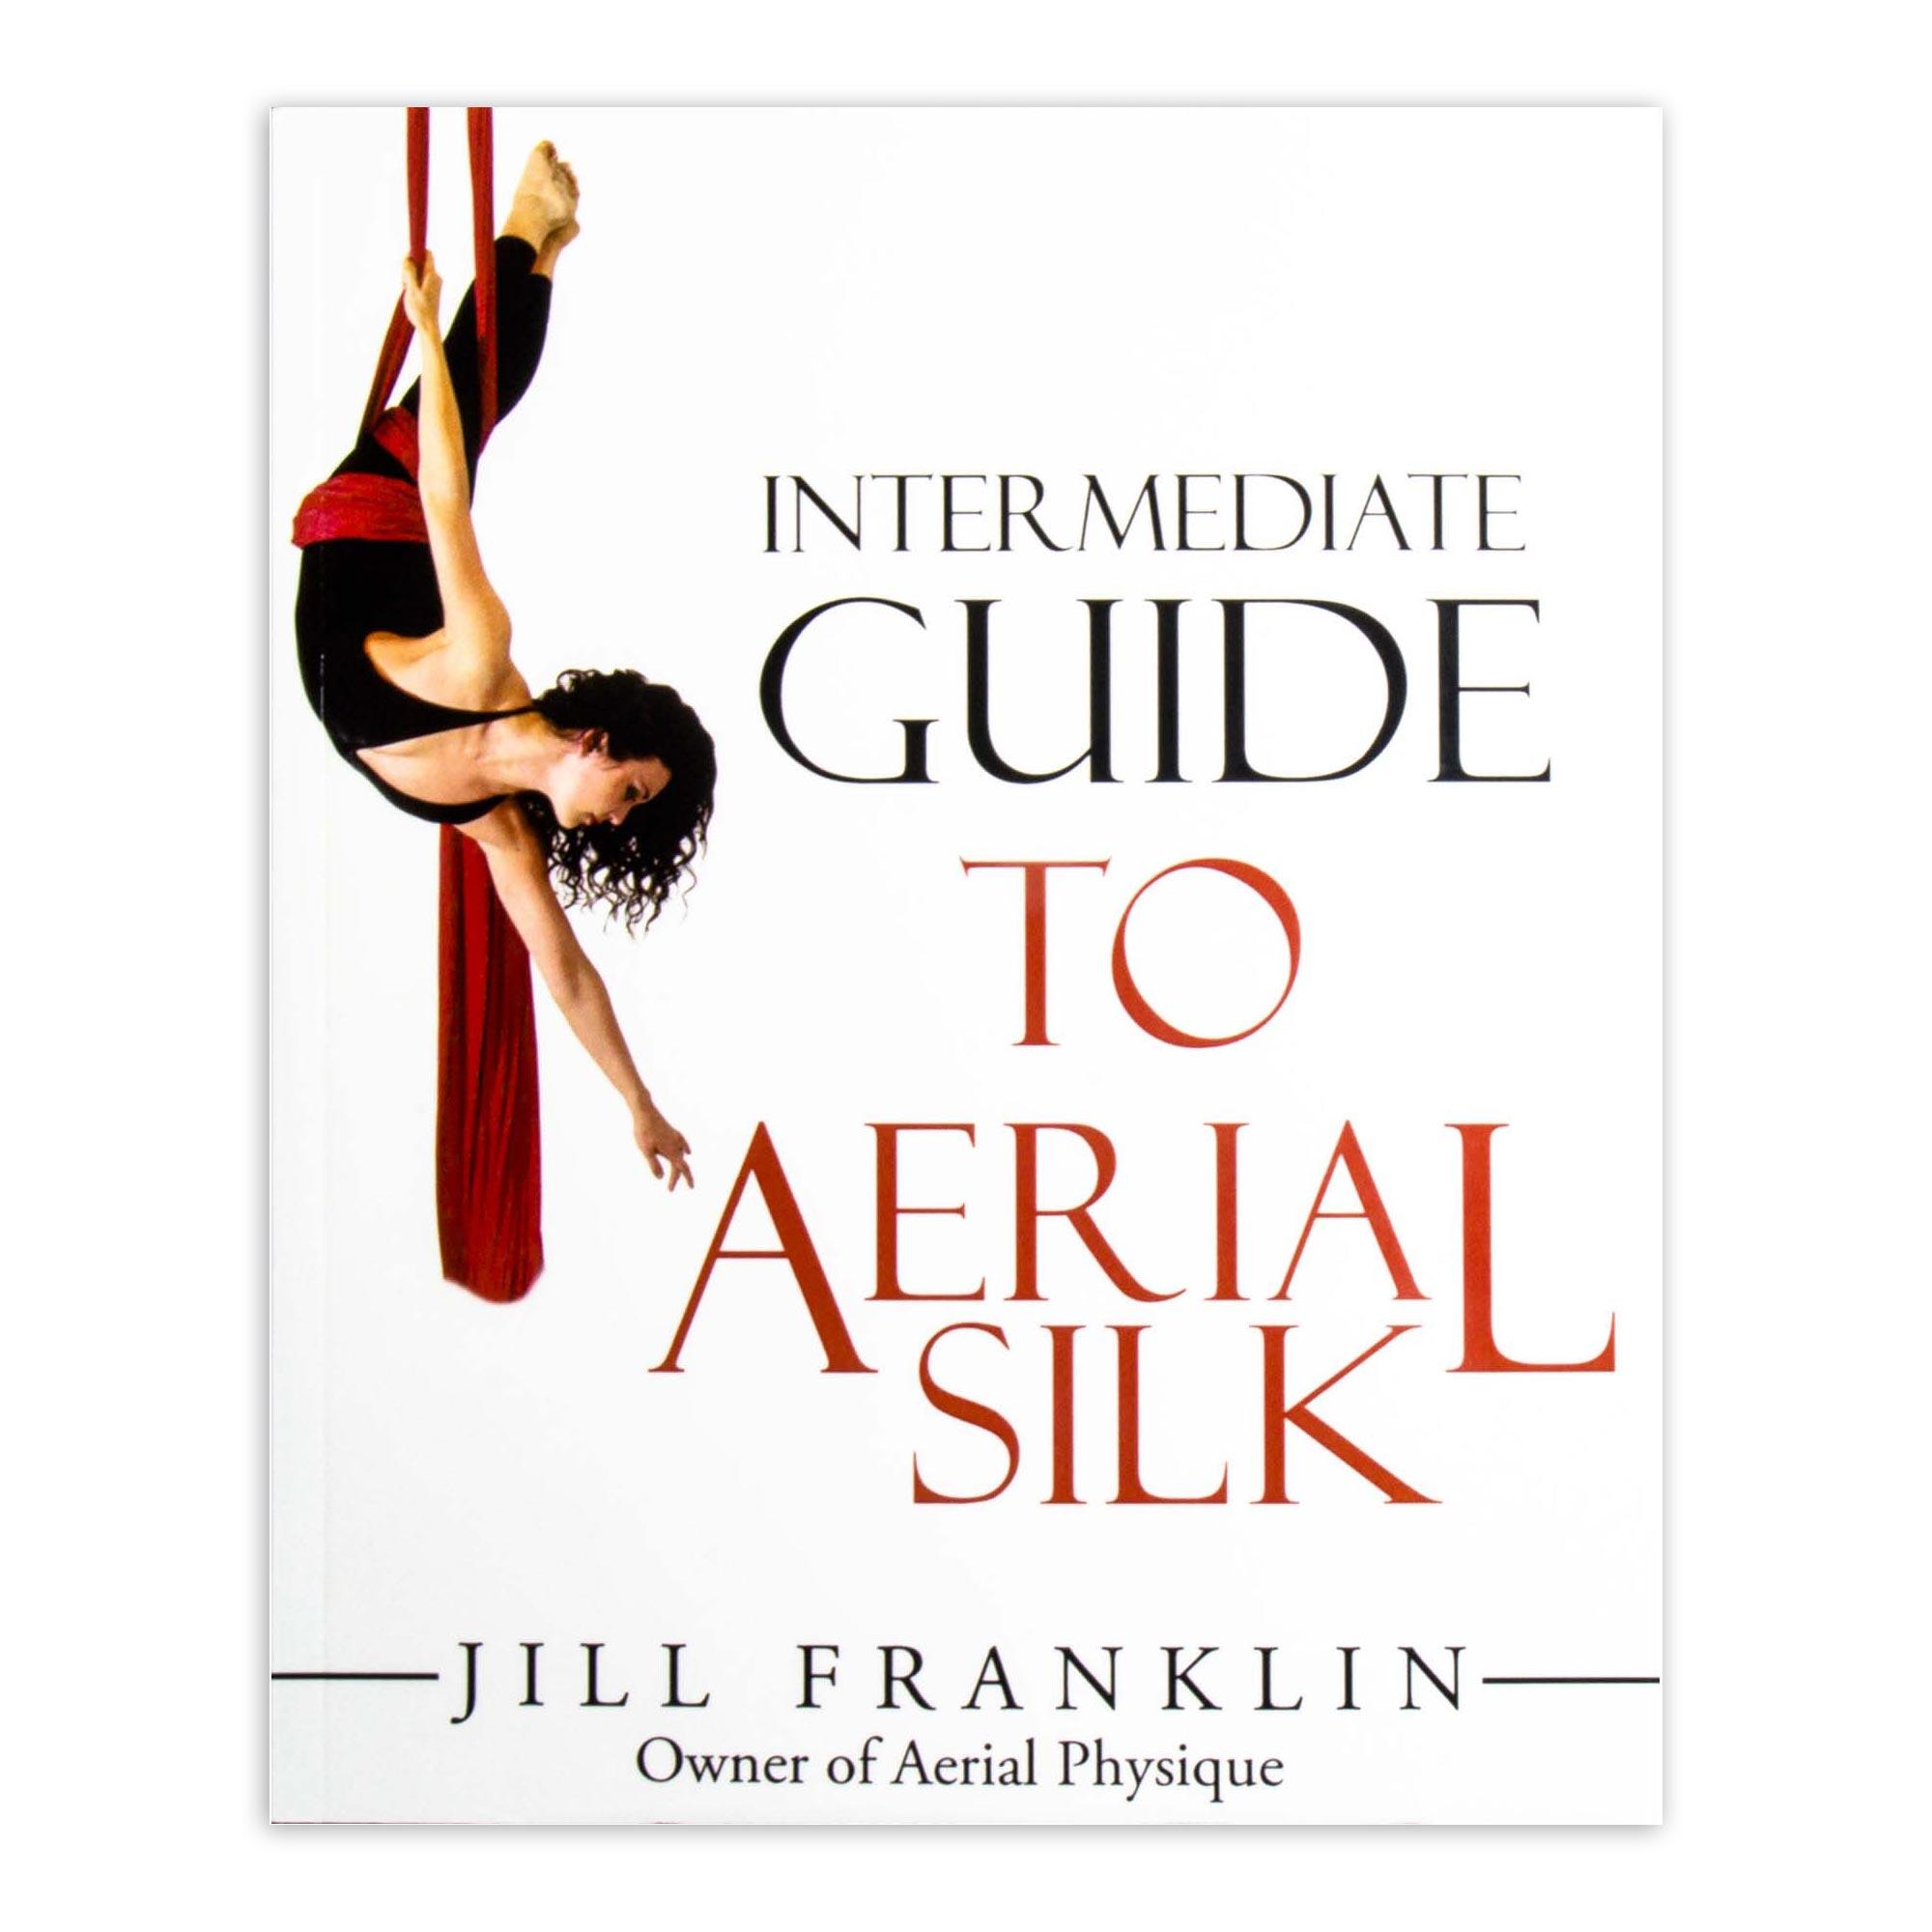 FIRETOYS Intermediate Guide to Aerial Silk by Jill Franklin